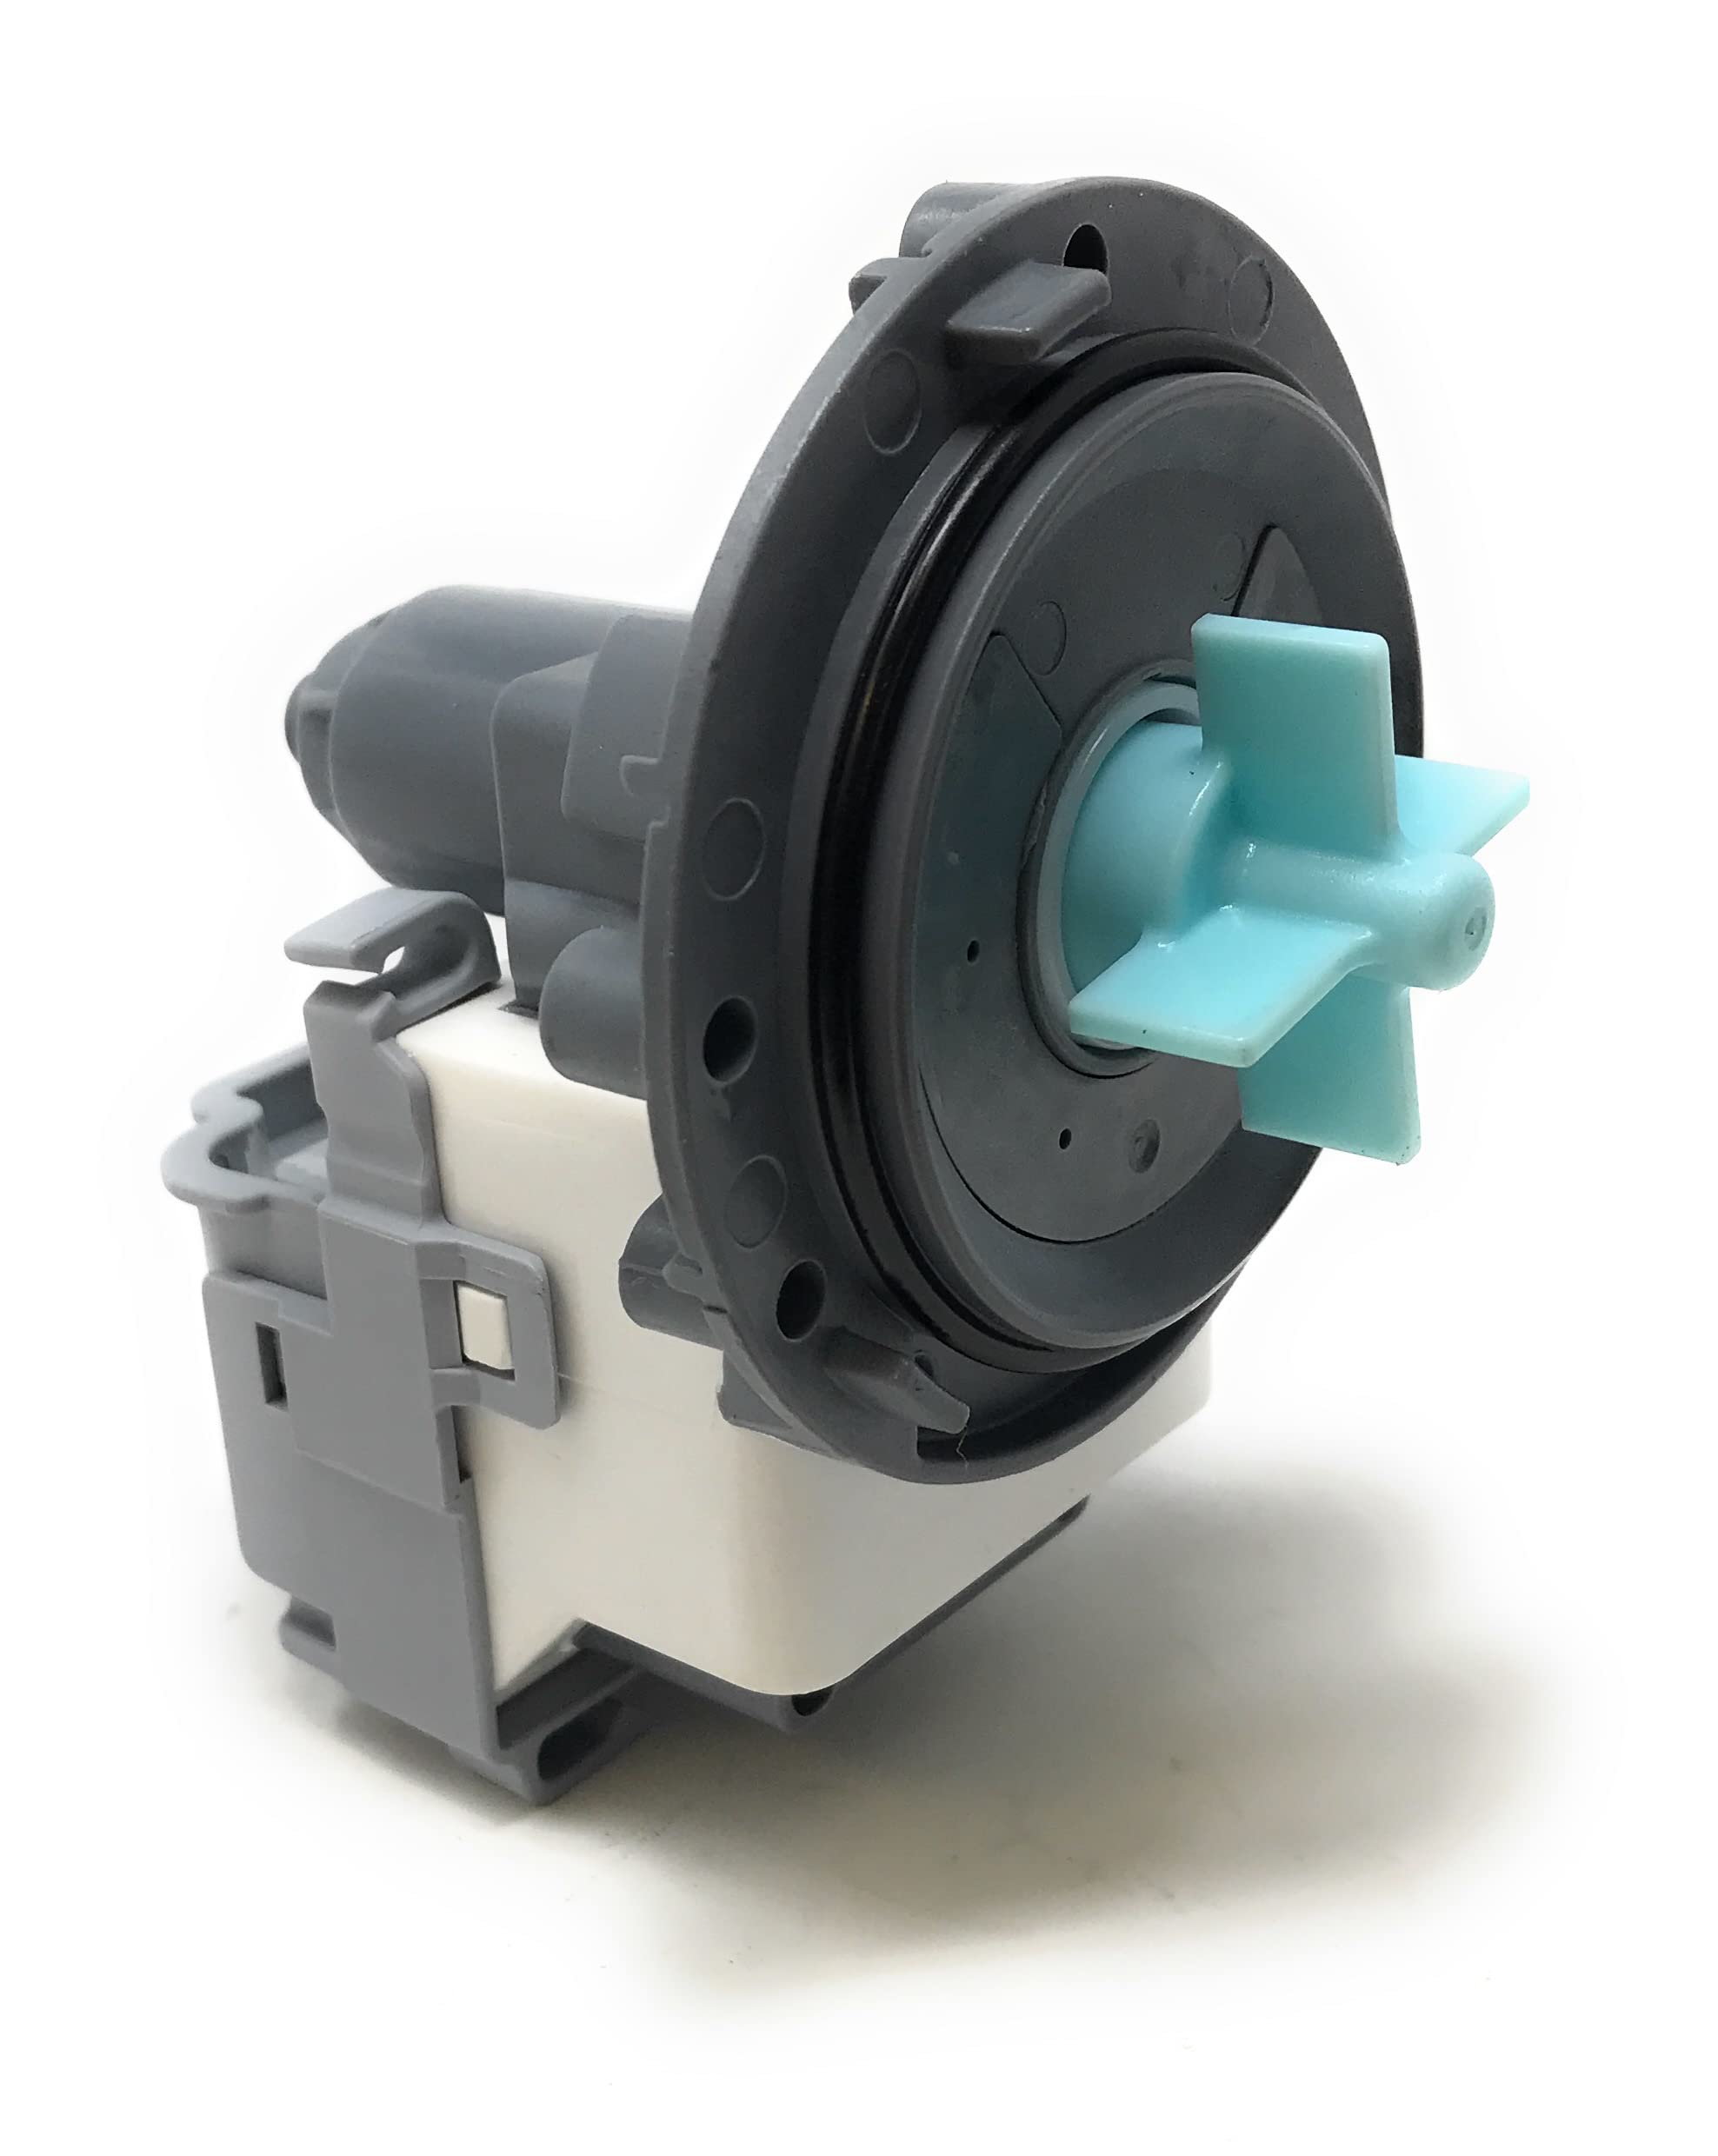 Samsung Washer AC Pump Motor. Part #DC31-00181C